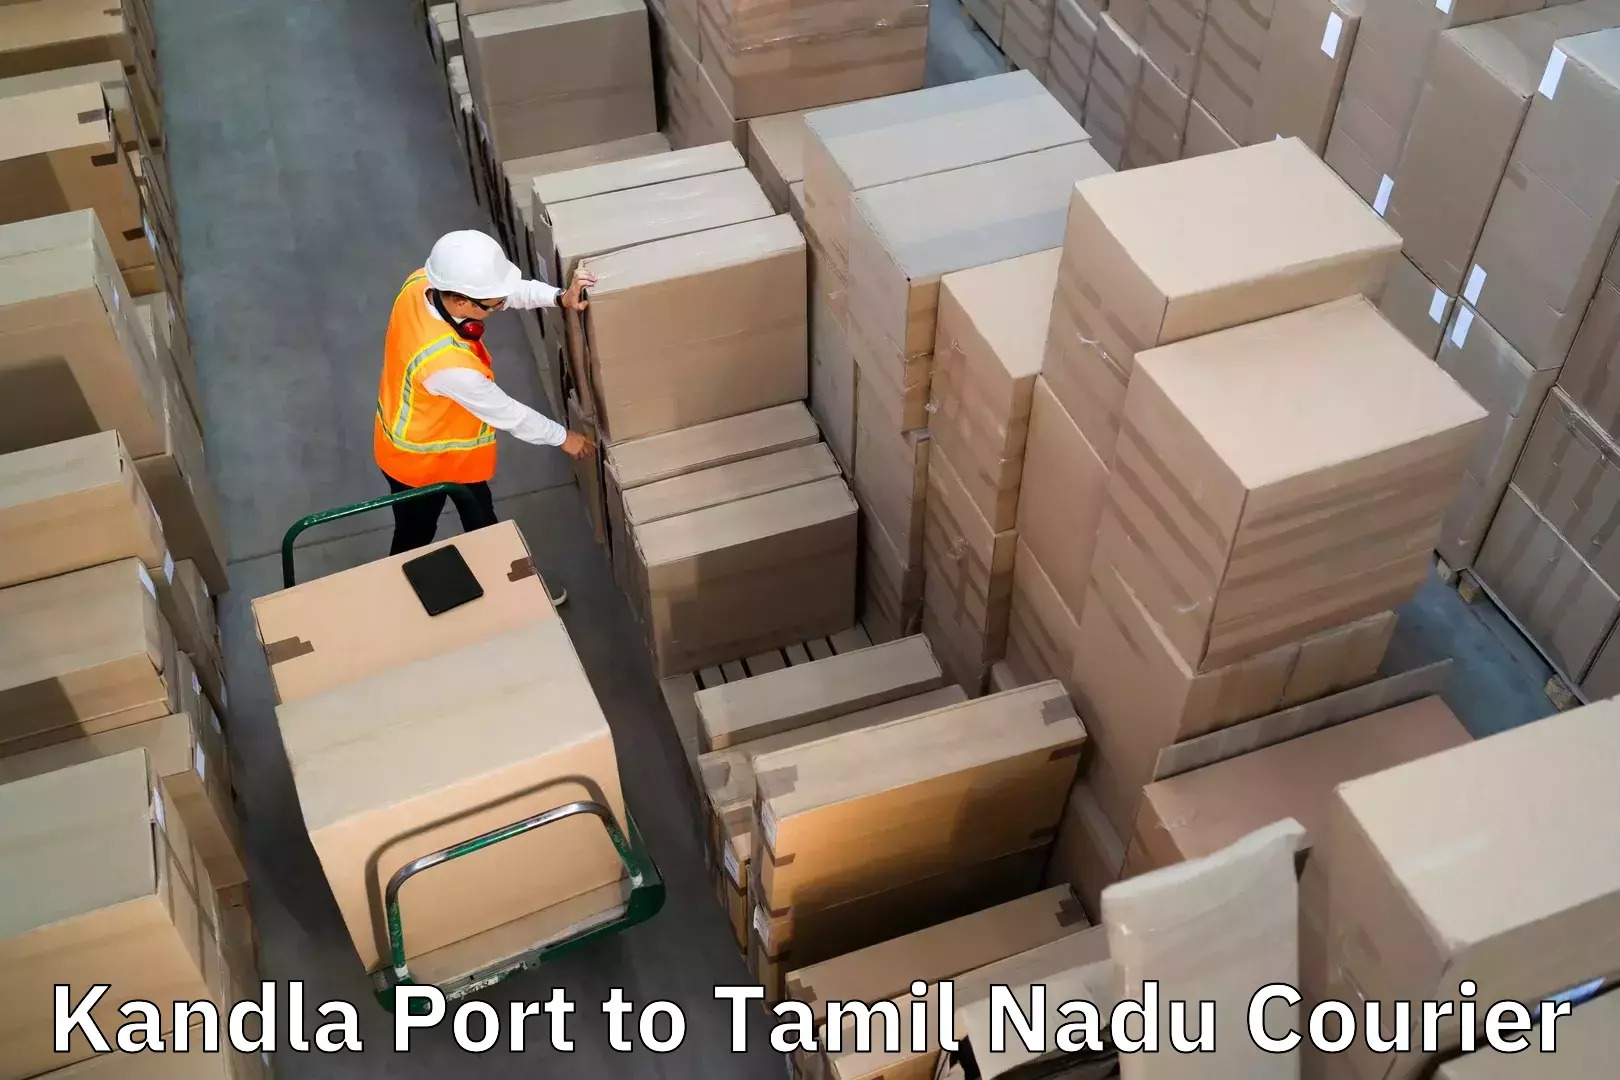 Luggage delivery system Kandla Port to Tiruchirappalli